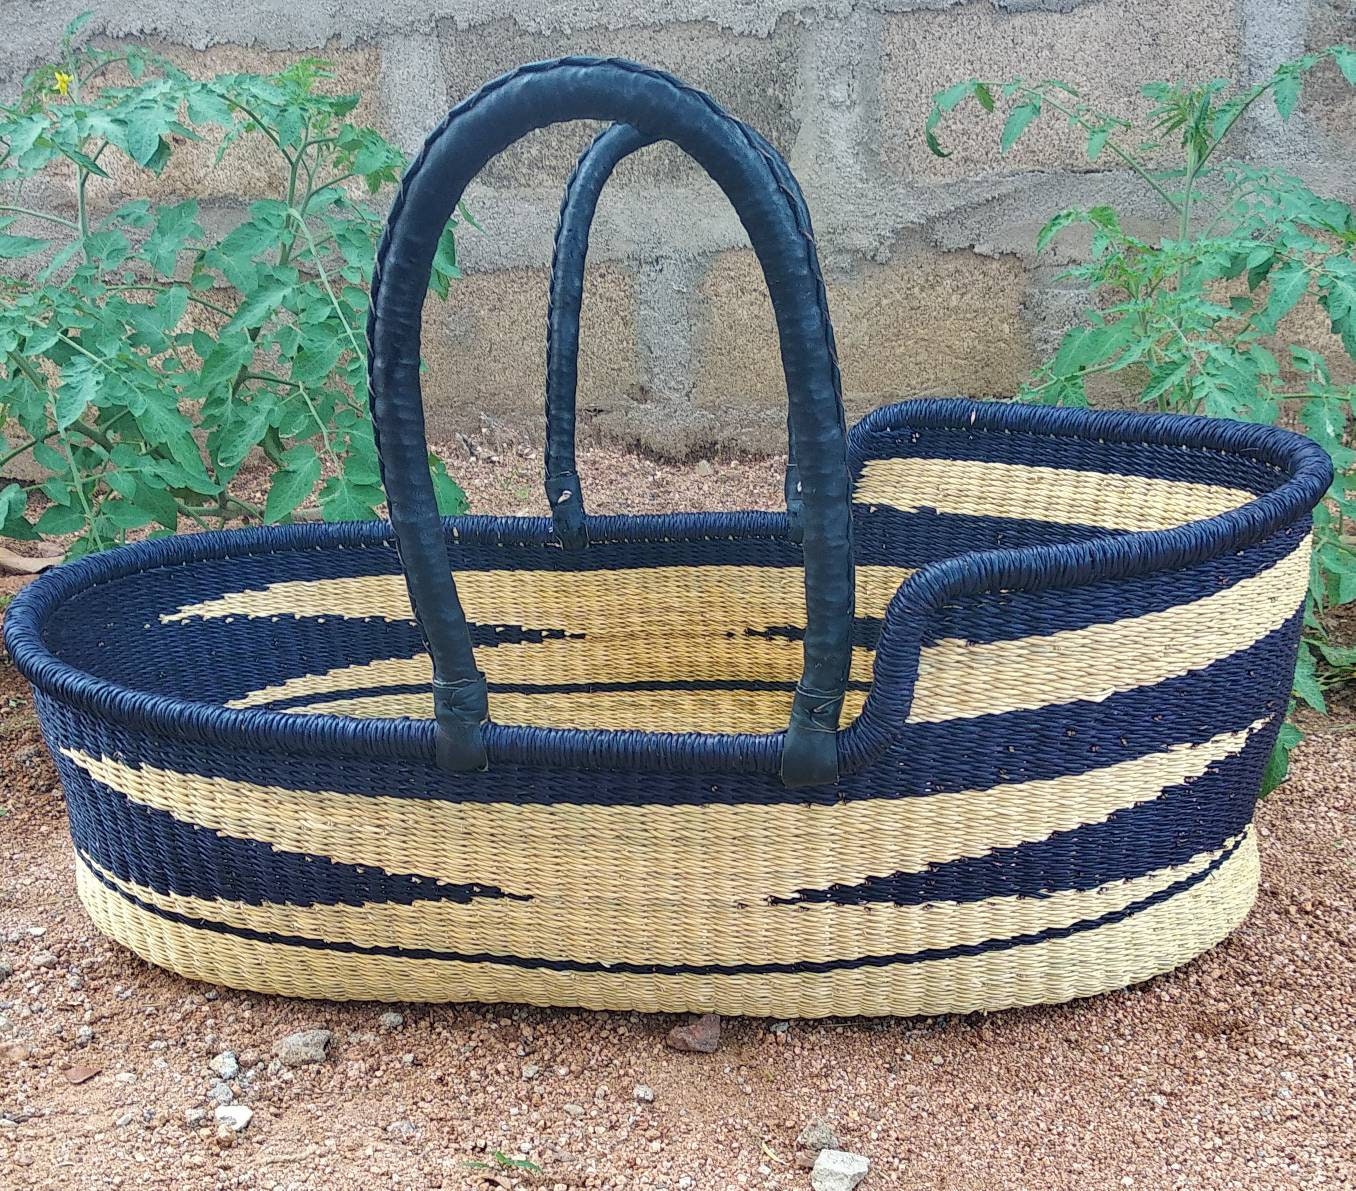 Moses basket | platform bed | Baby shower gift | Moses basket for baby| Baby bed | African moses basket | Gift for mom | Nursery decor